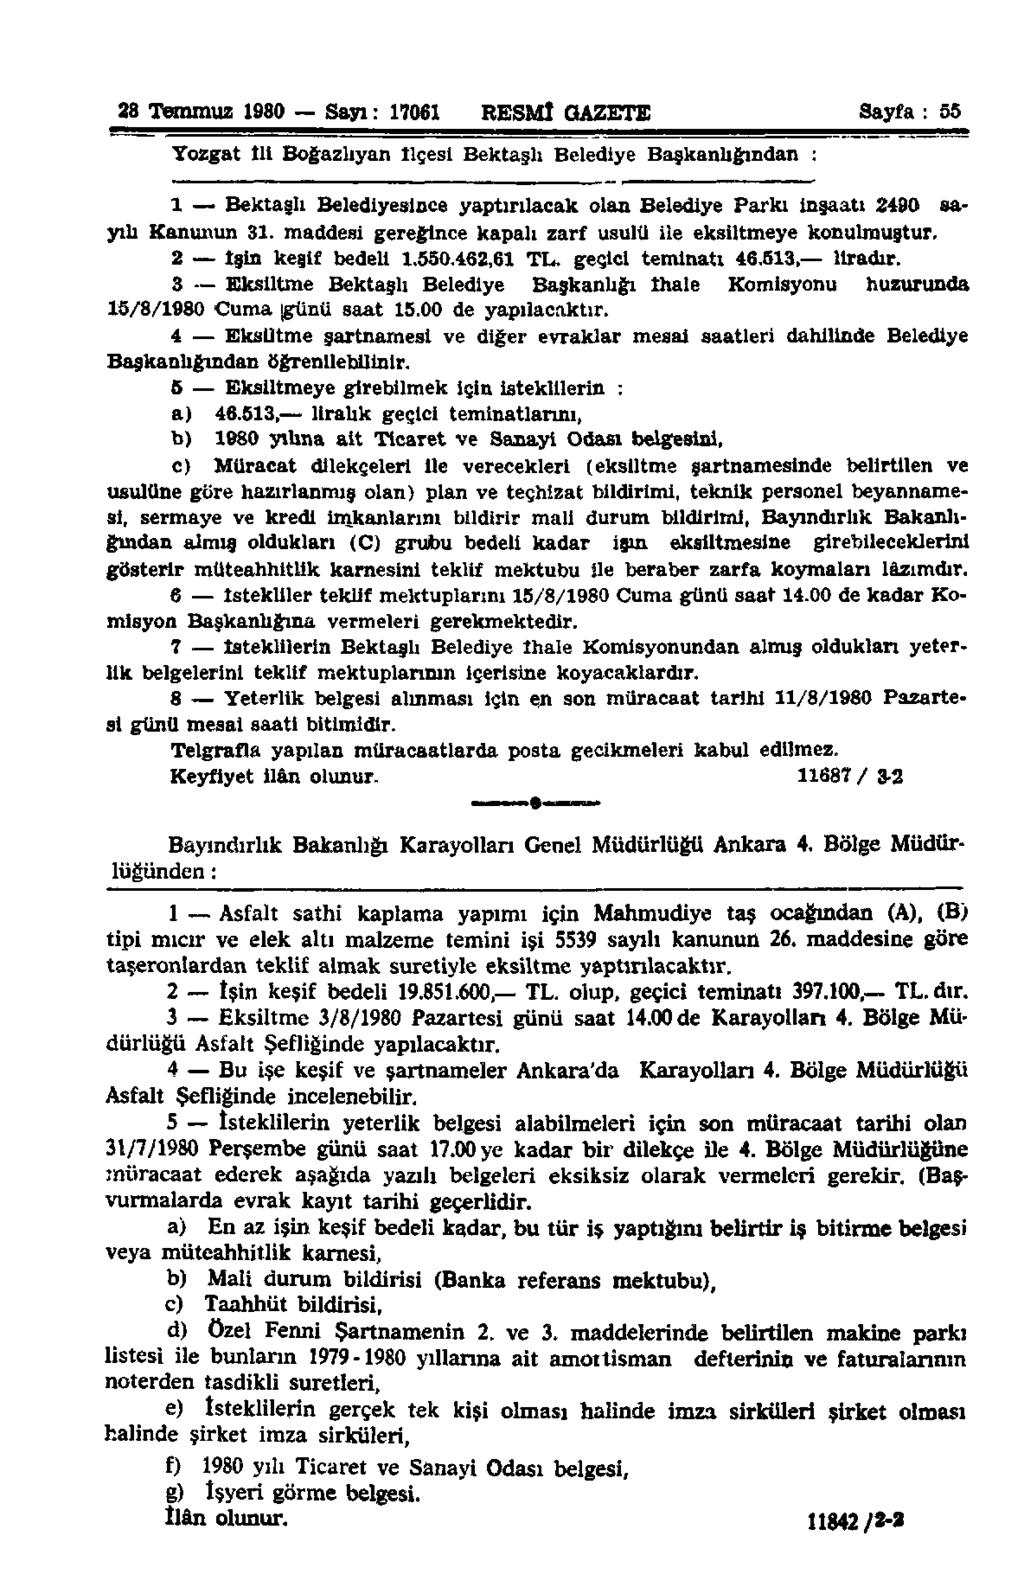 28 Temmuz 1980 Sayı: 17061 RESMÎ GAZETE Sayfa : 55 Yozgat 111 Boğazhyan ilçesi Bektaşh Belediye Başkanlığından : 1 Bektaşh Belediyesince yaptırılacak olan Belediye Parkı inşaatı 2490 sayılı Kanunun